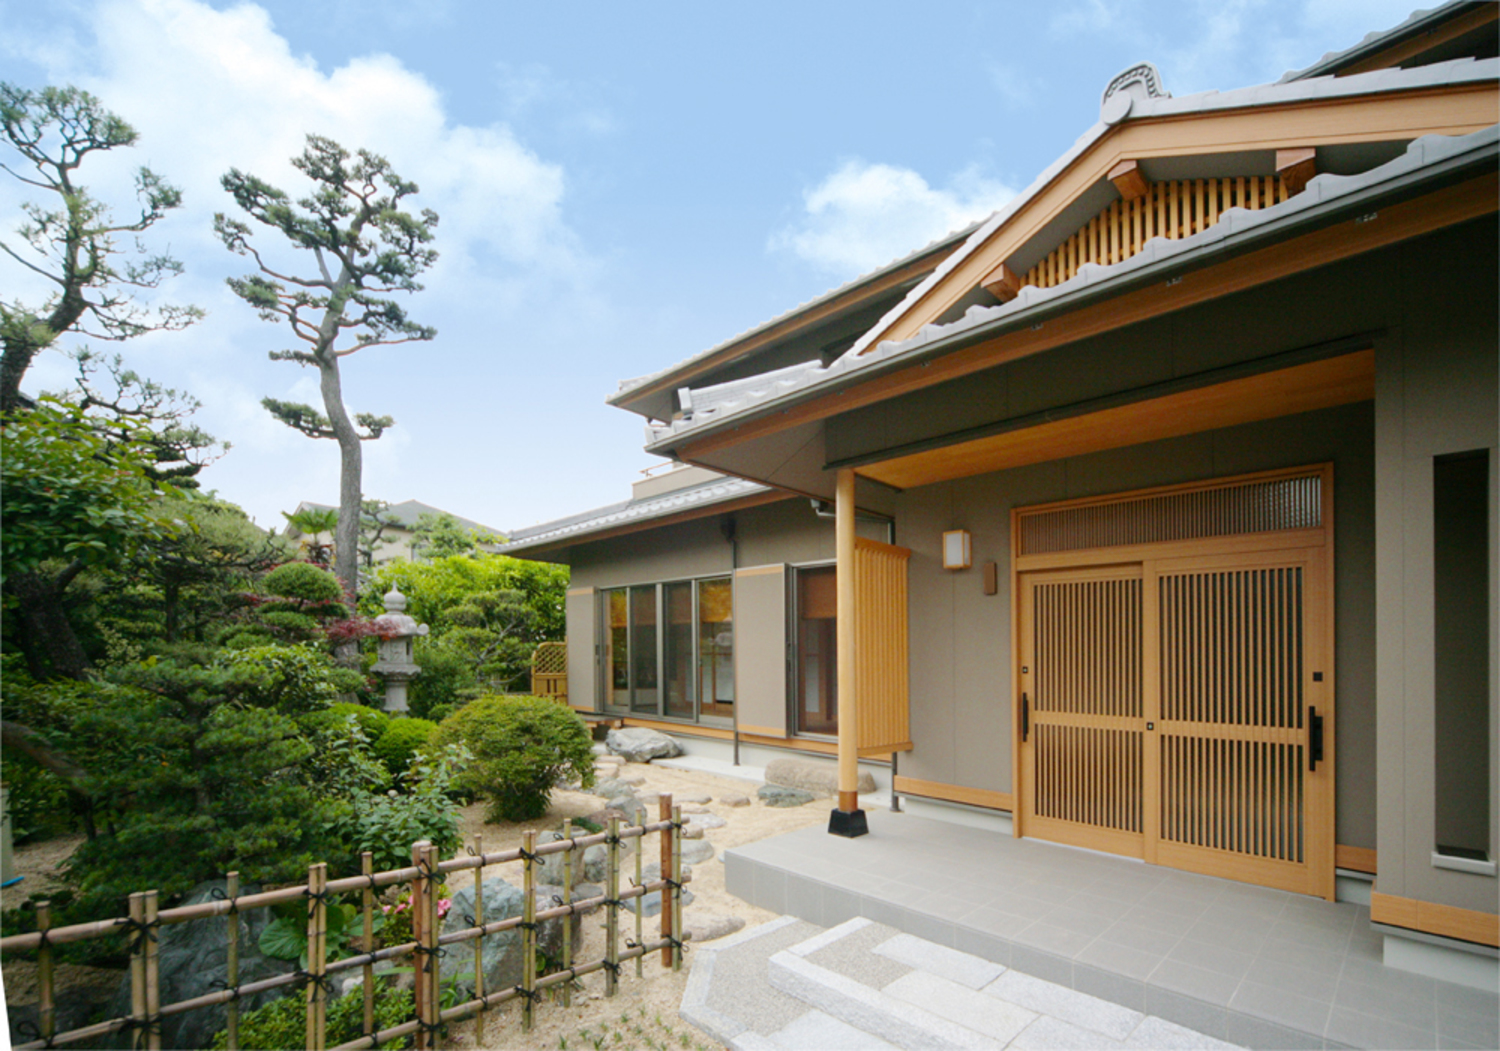 注文住宅 和風住宅の広がりある空間を活用した二世帯住宅 愛知県 岐阜県で新築 注文住宅を建てる新和建設のフォトギャラリー